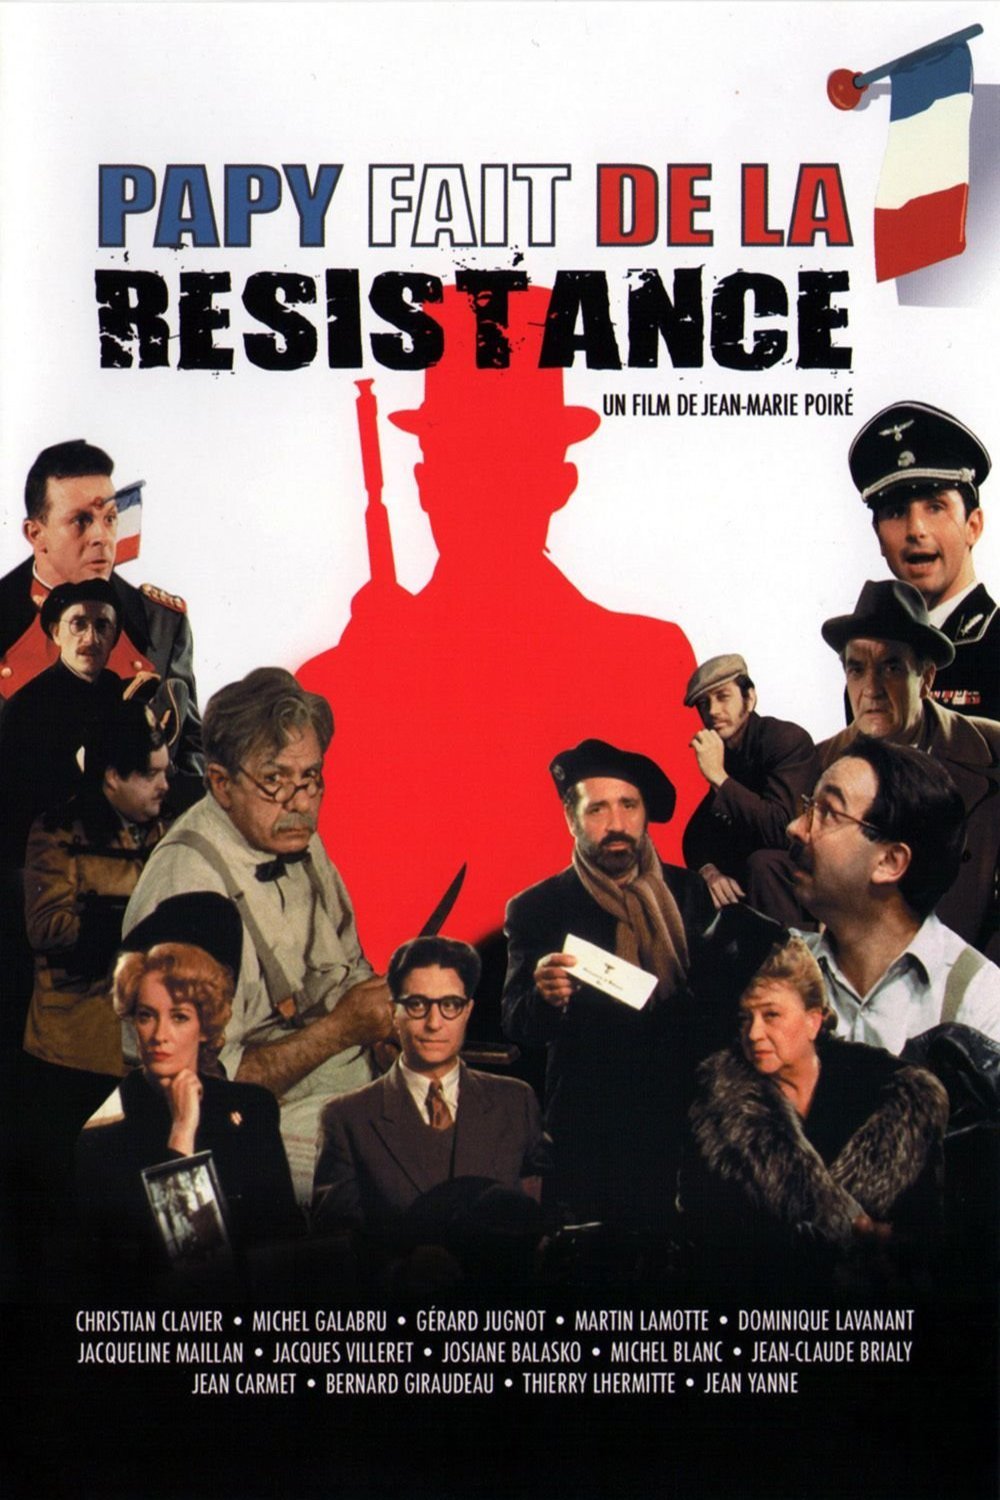 Poster of the movie Papy fait de la résistance